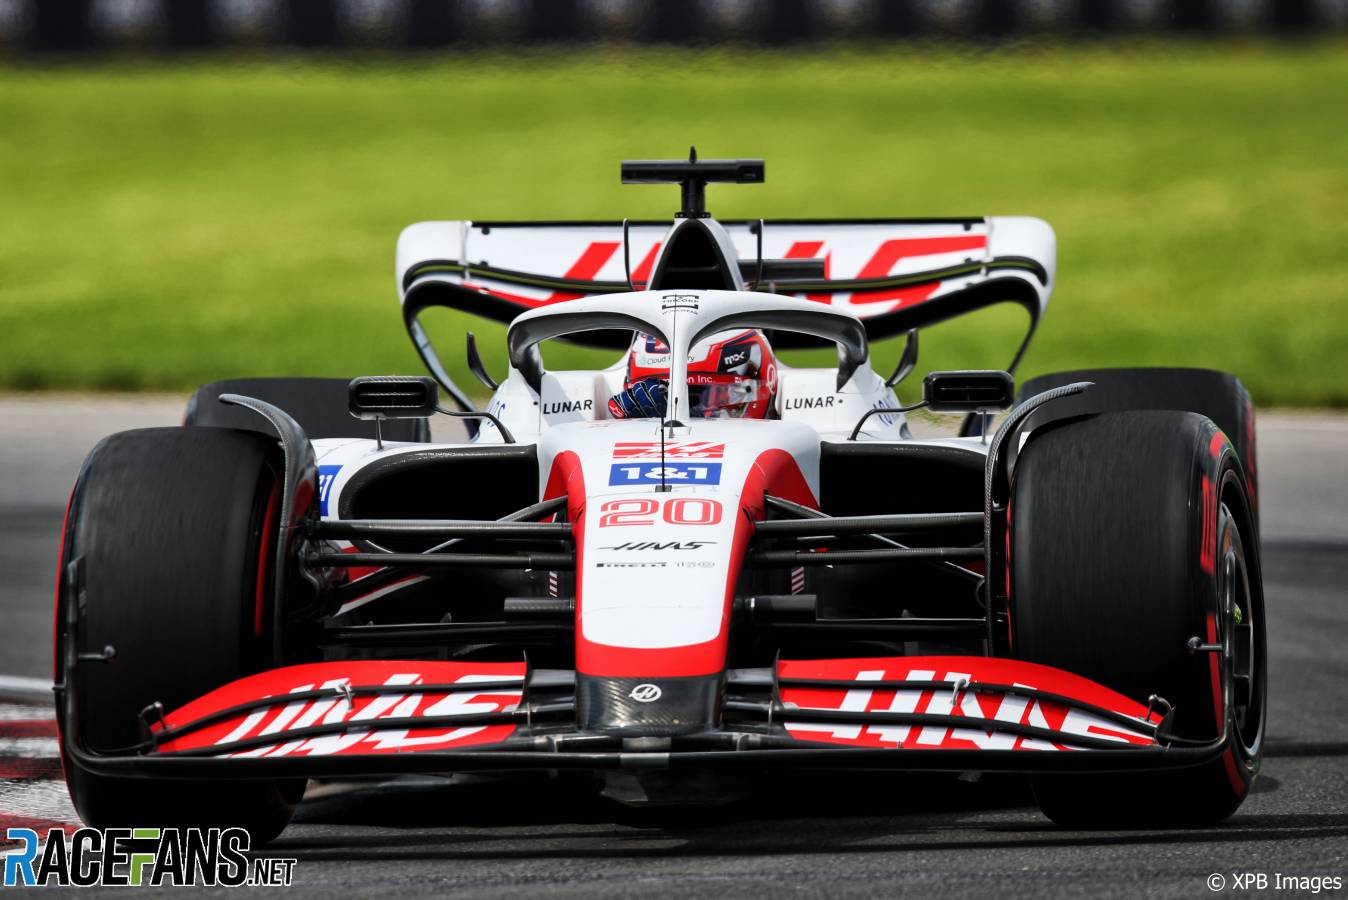 Kevin Magnussen, Haas, Circuit Gilles Villeneuve, 2022